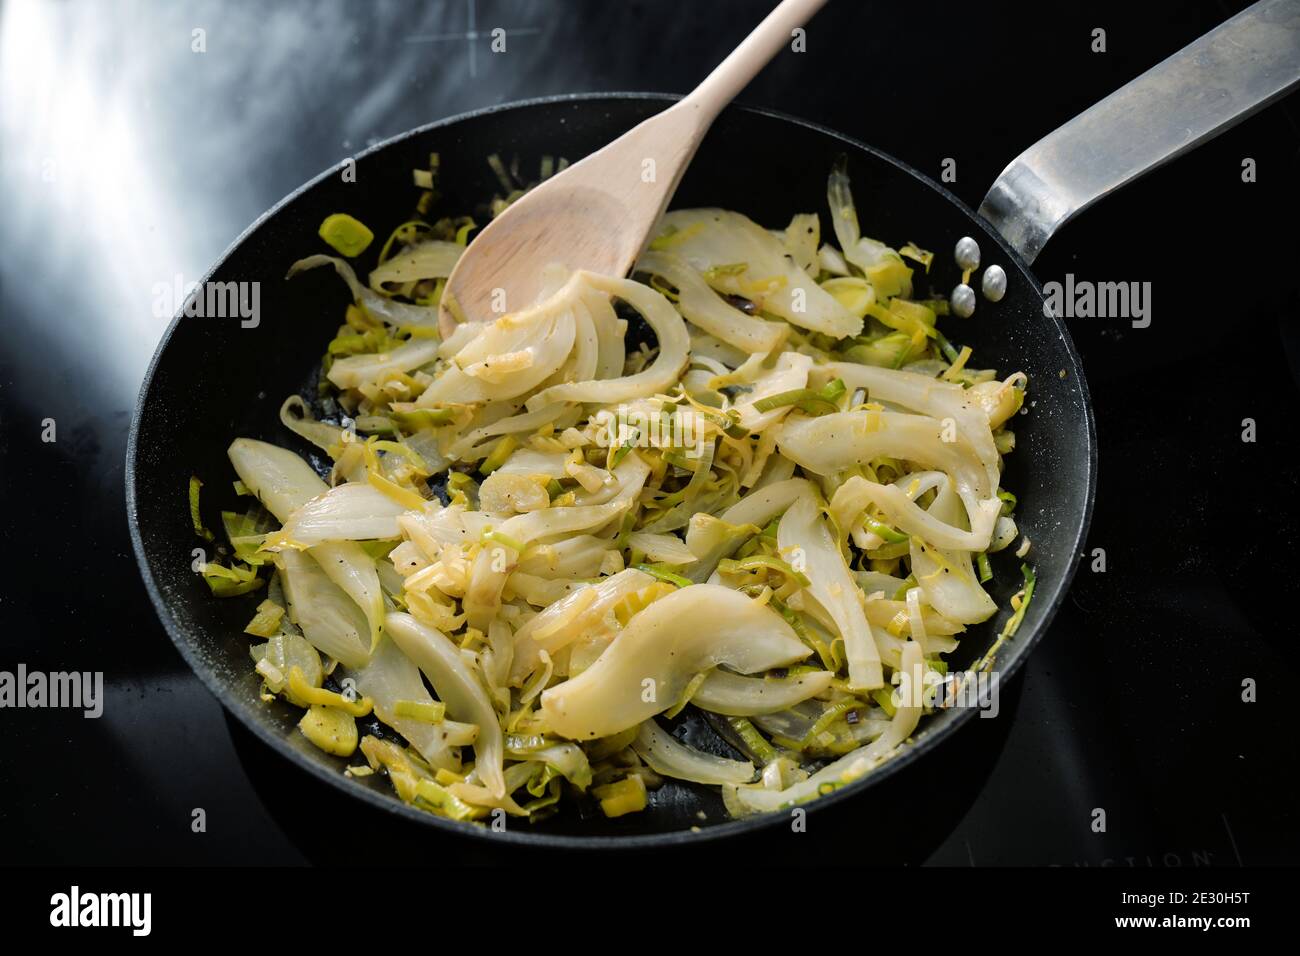 Fette di finocchio e porri in una padella nera sulla stufa, cucina vegetariana con verdure sane, fuoco selezionato, profondità di campo stretta Foto Stock